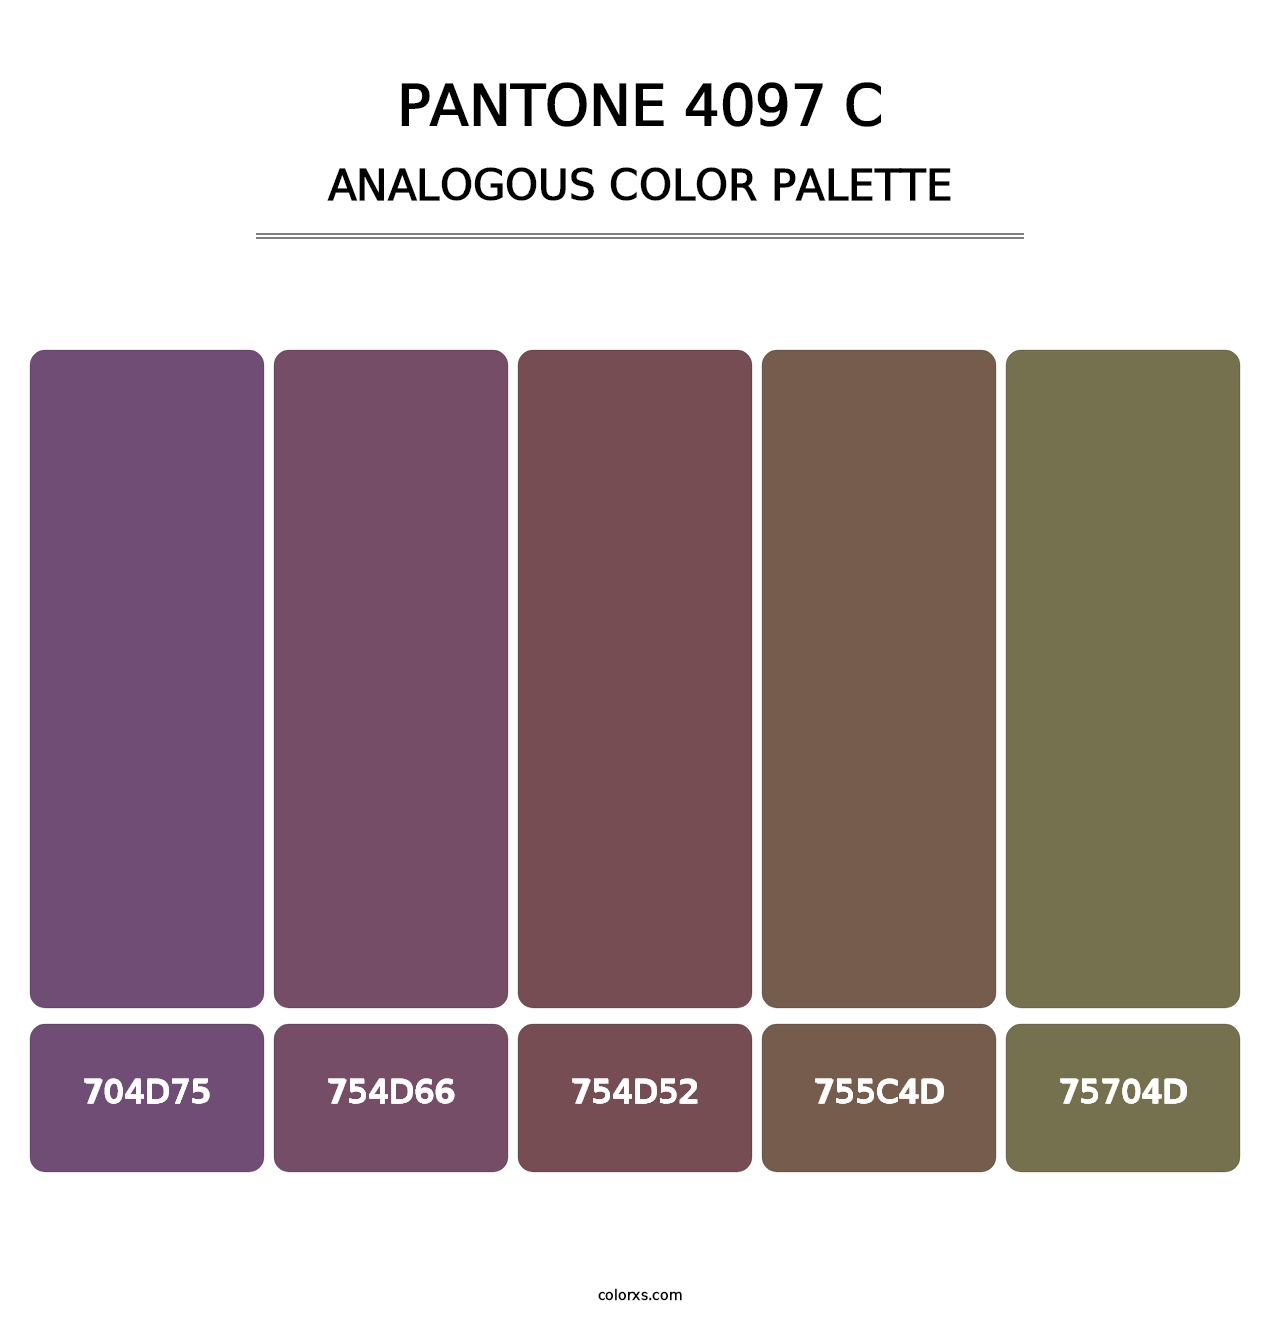 PANTONE 4097 C - Analogous Color Palette